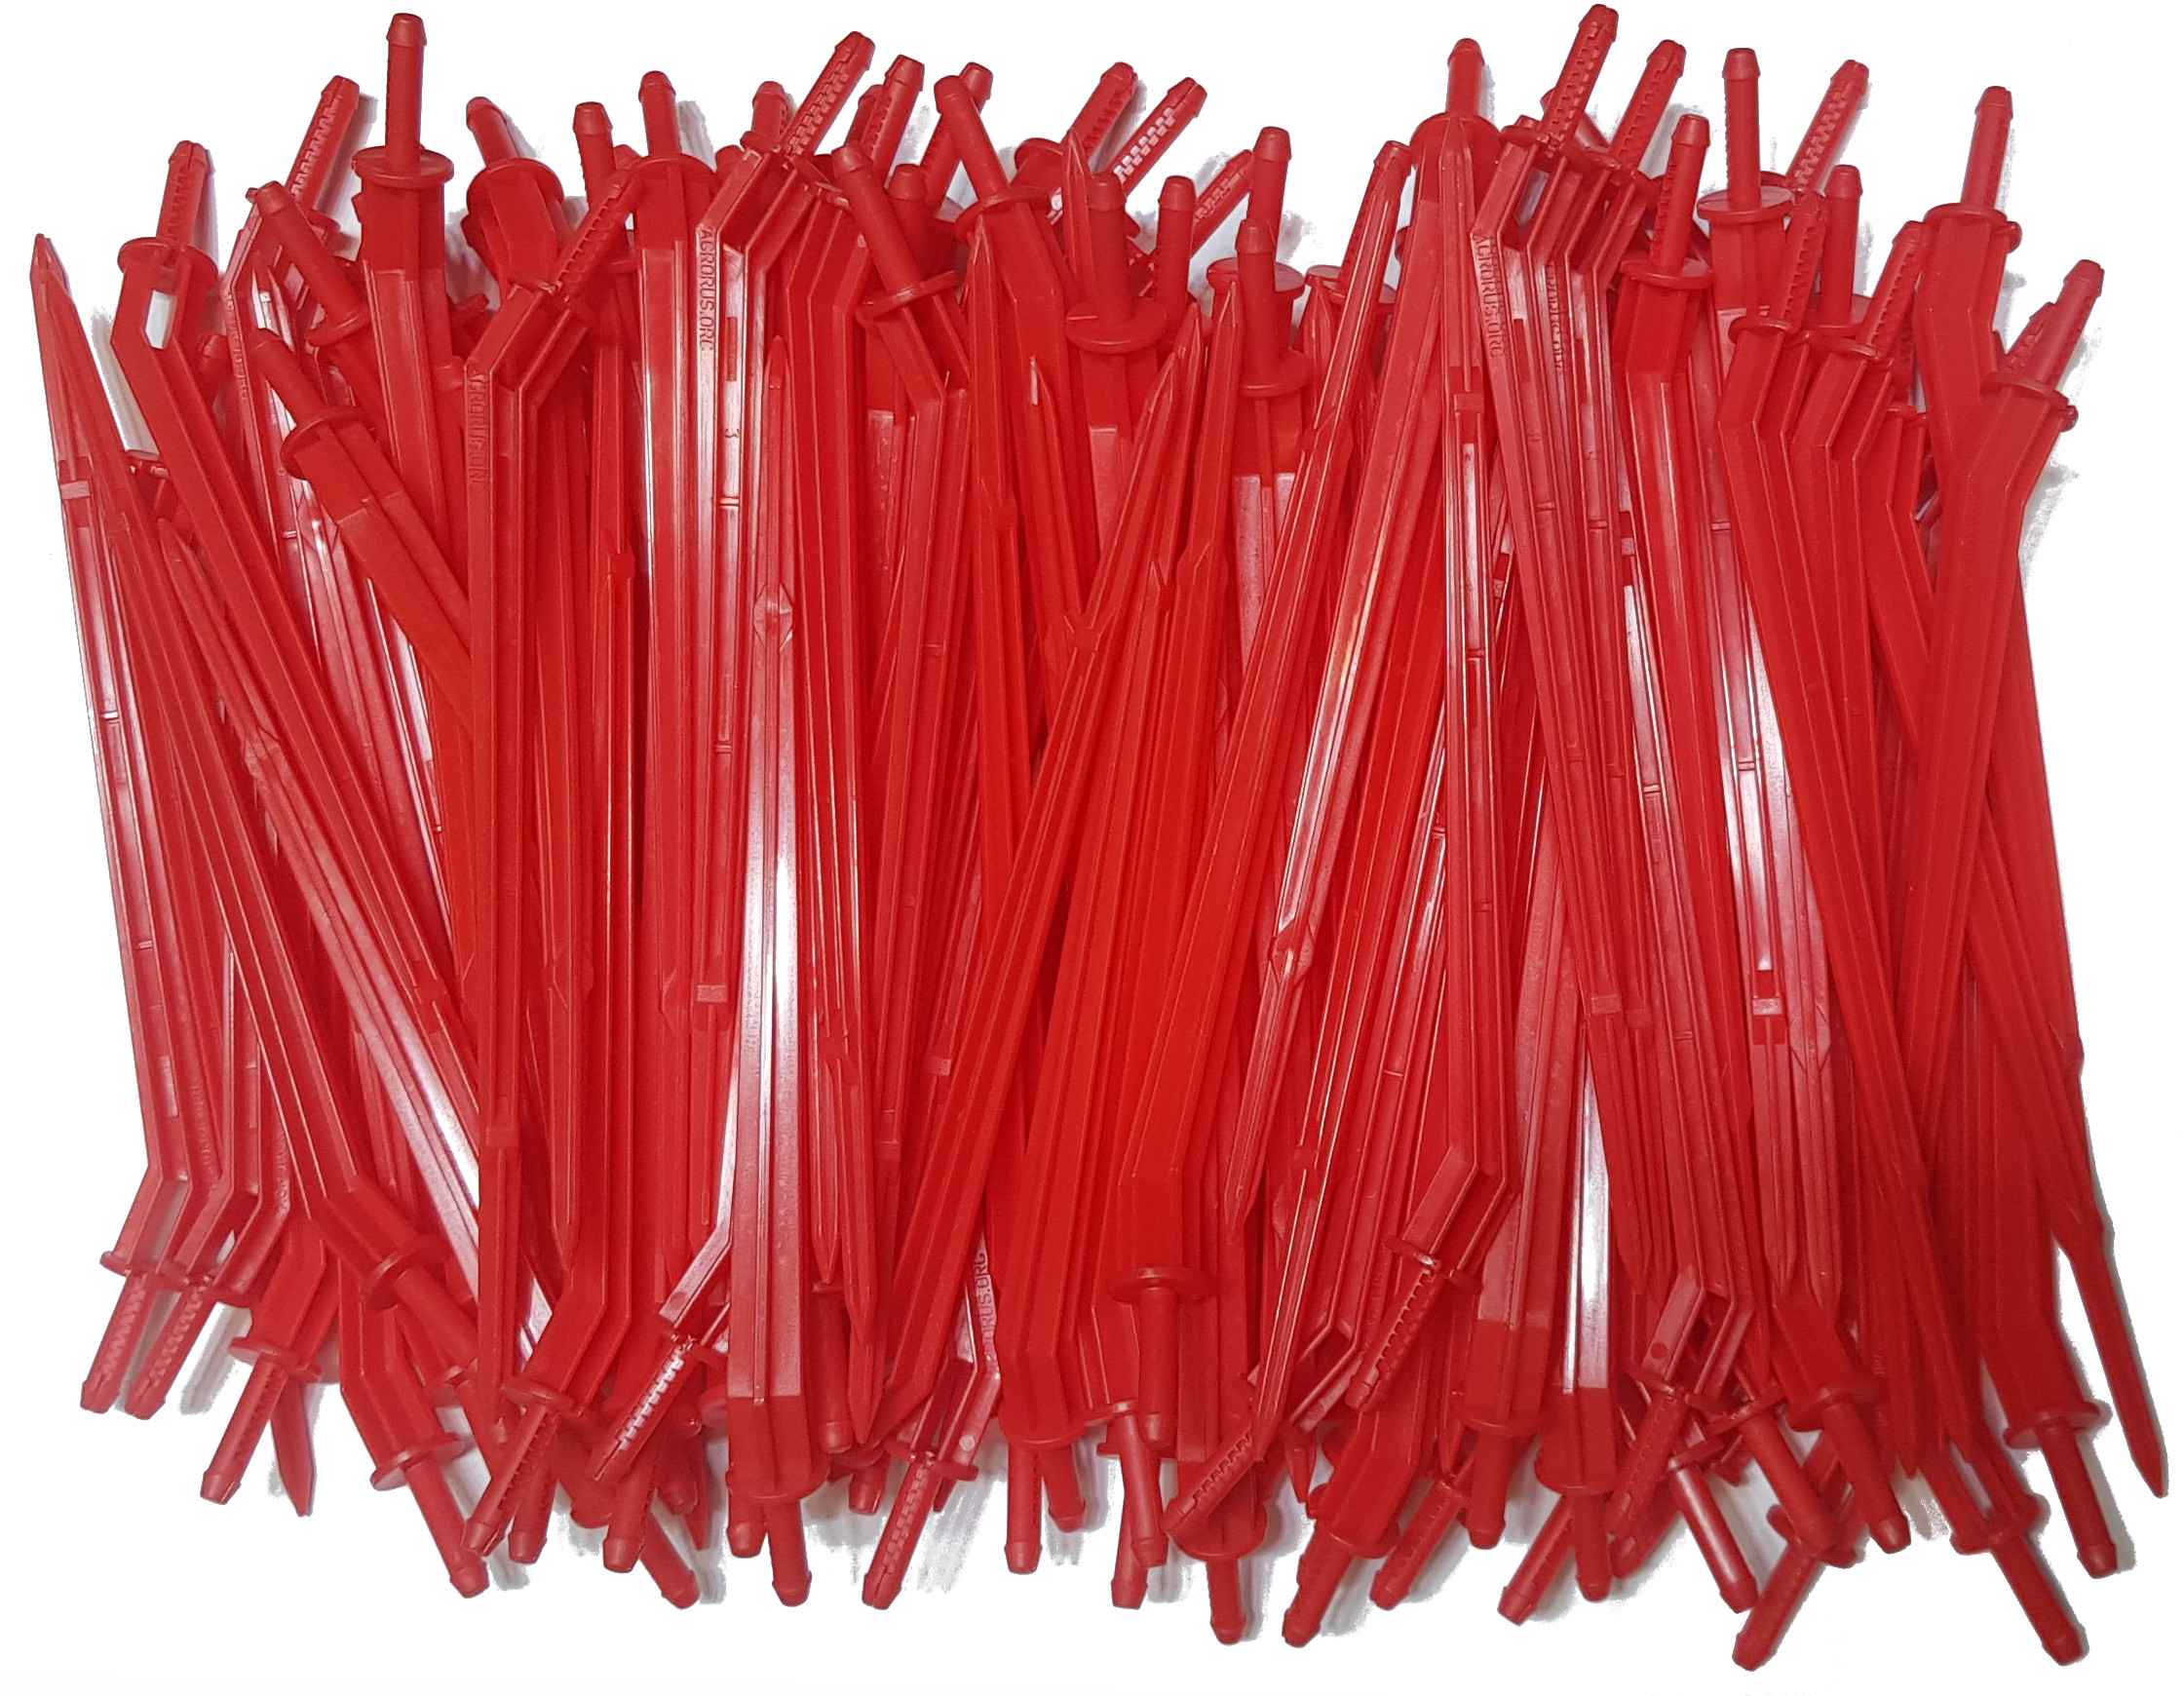 Капельница-колышек красная, Агрополив, 3103R, 15 см, 100 шт